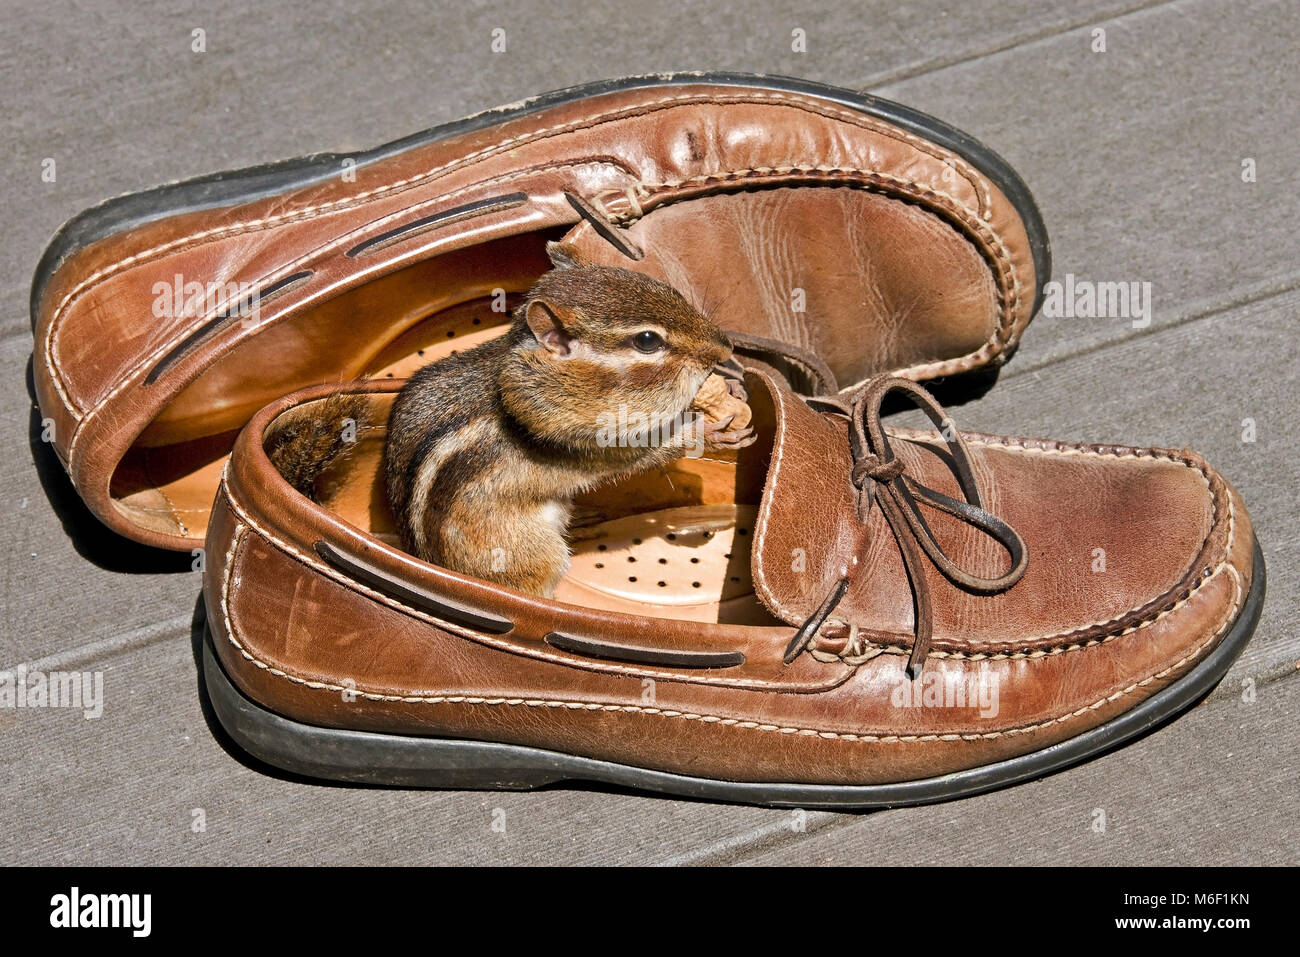 Östlichen Streifenhörnchen (Tamias striatus) essen Erdnuss im Schuh, E USA, durch Überspringen Moody/Dembinsky Foto Assoc Stockfoto